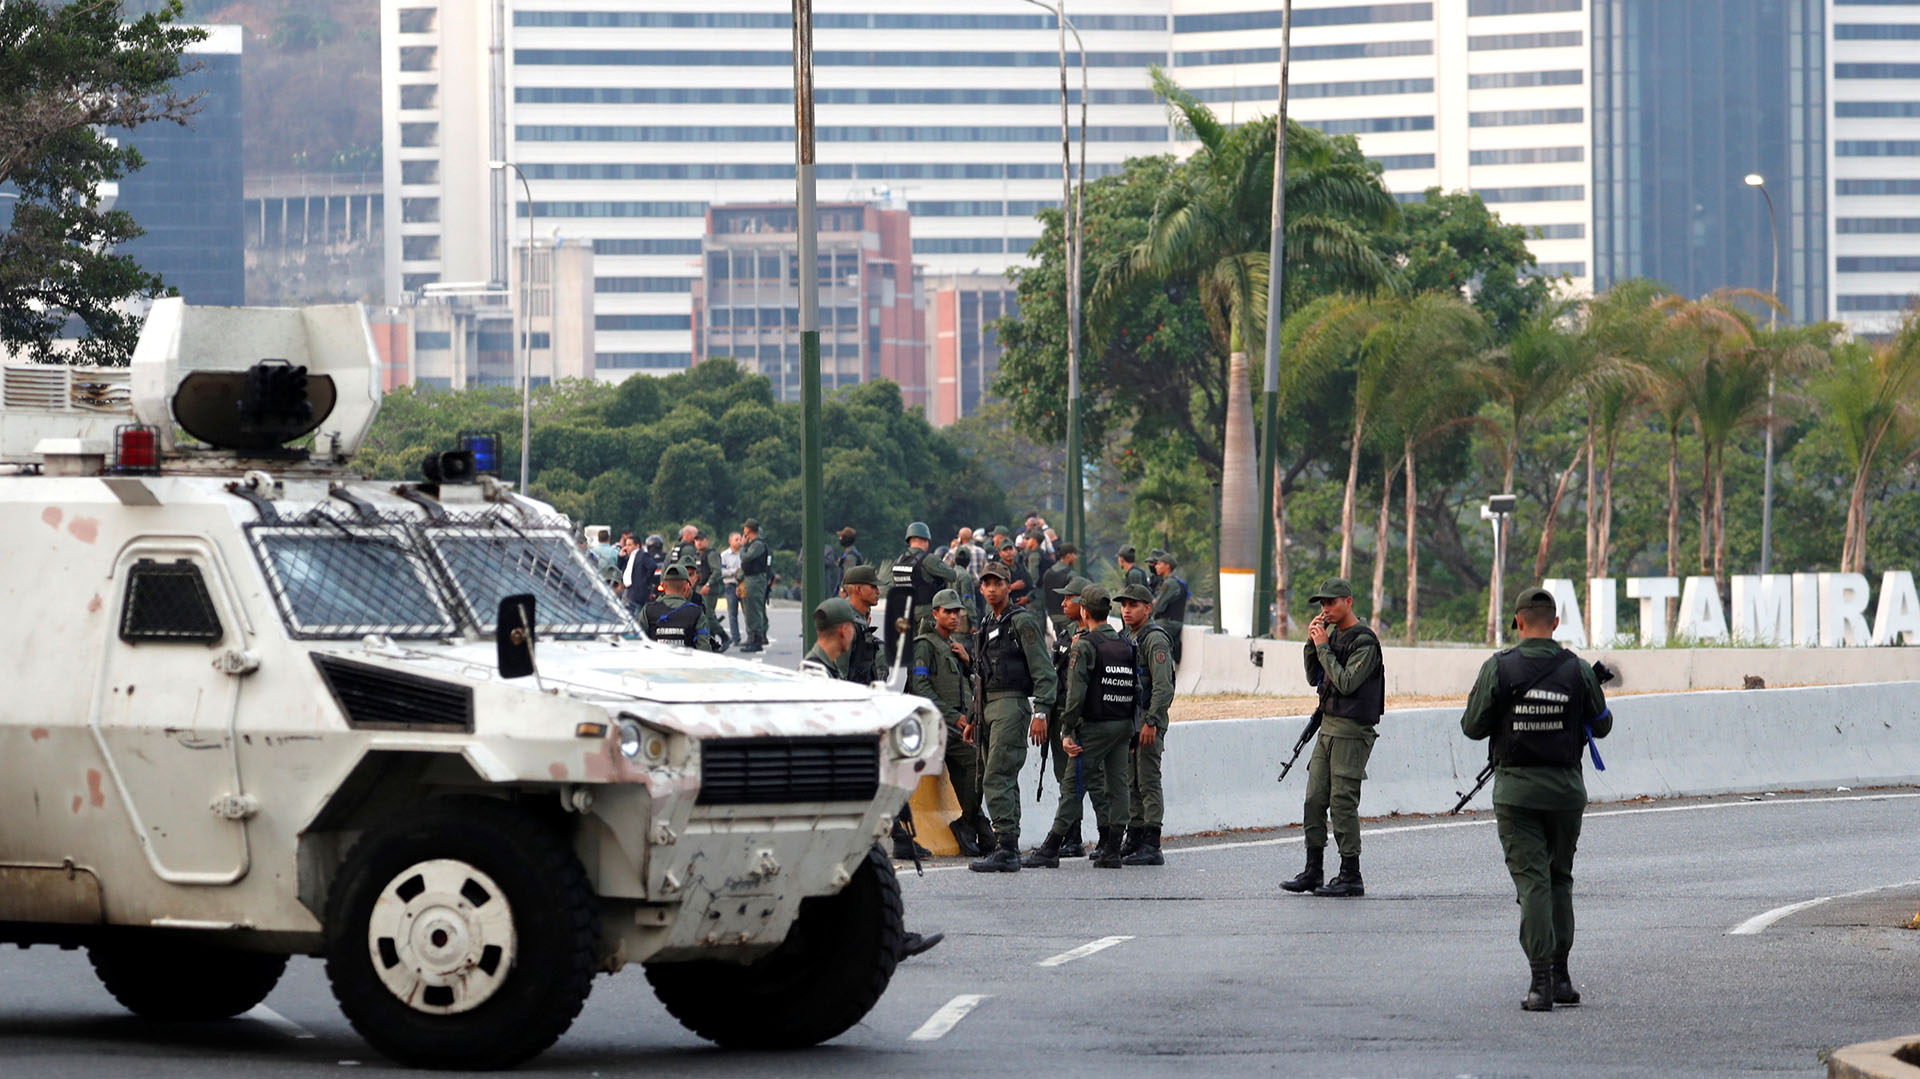 Militares hacen guardia cerca de la Base Aérea Generalísimo Francisco de Miranda “La Carlota”, en Caracas, Venezuela, el 30 de abril de 2019. REUTERS/Carlos Garcia Rawlins